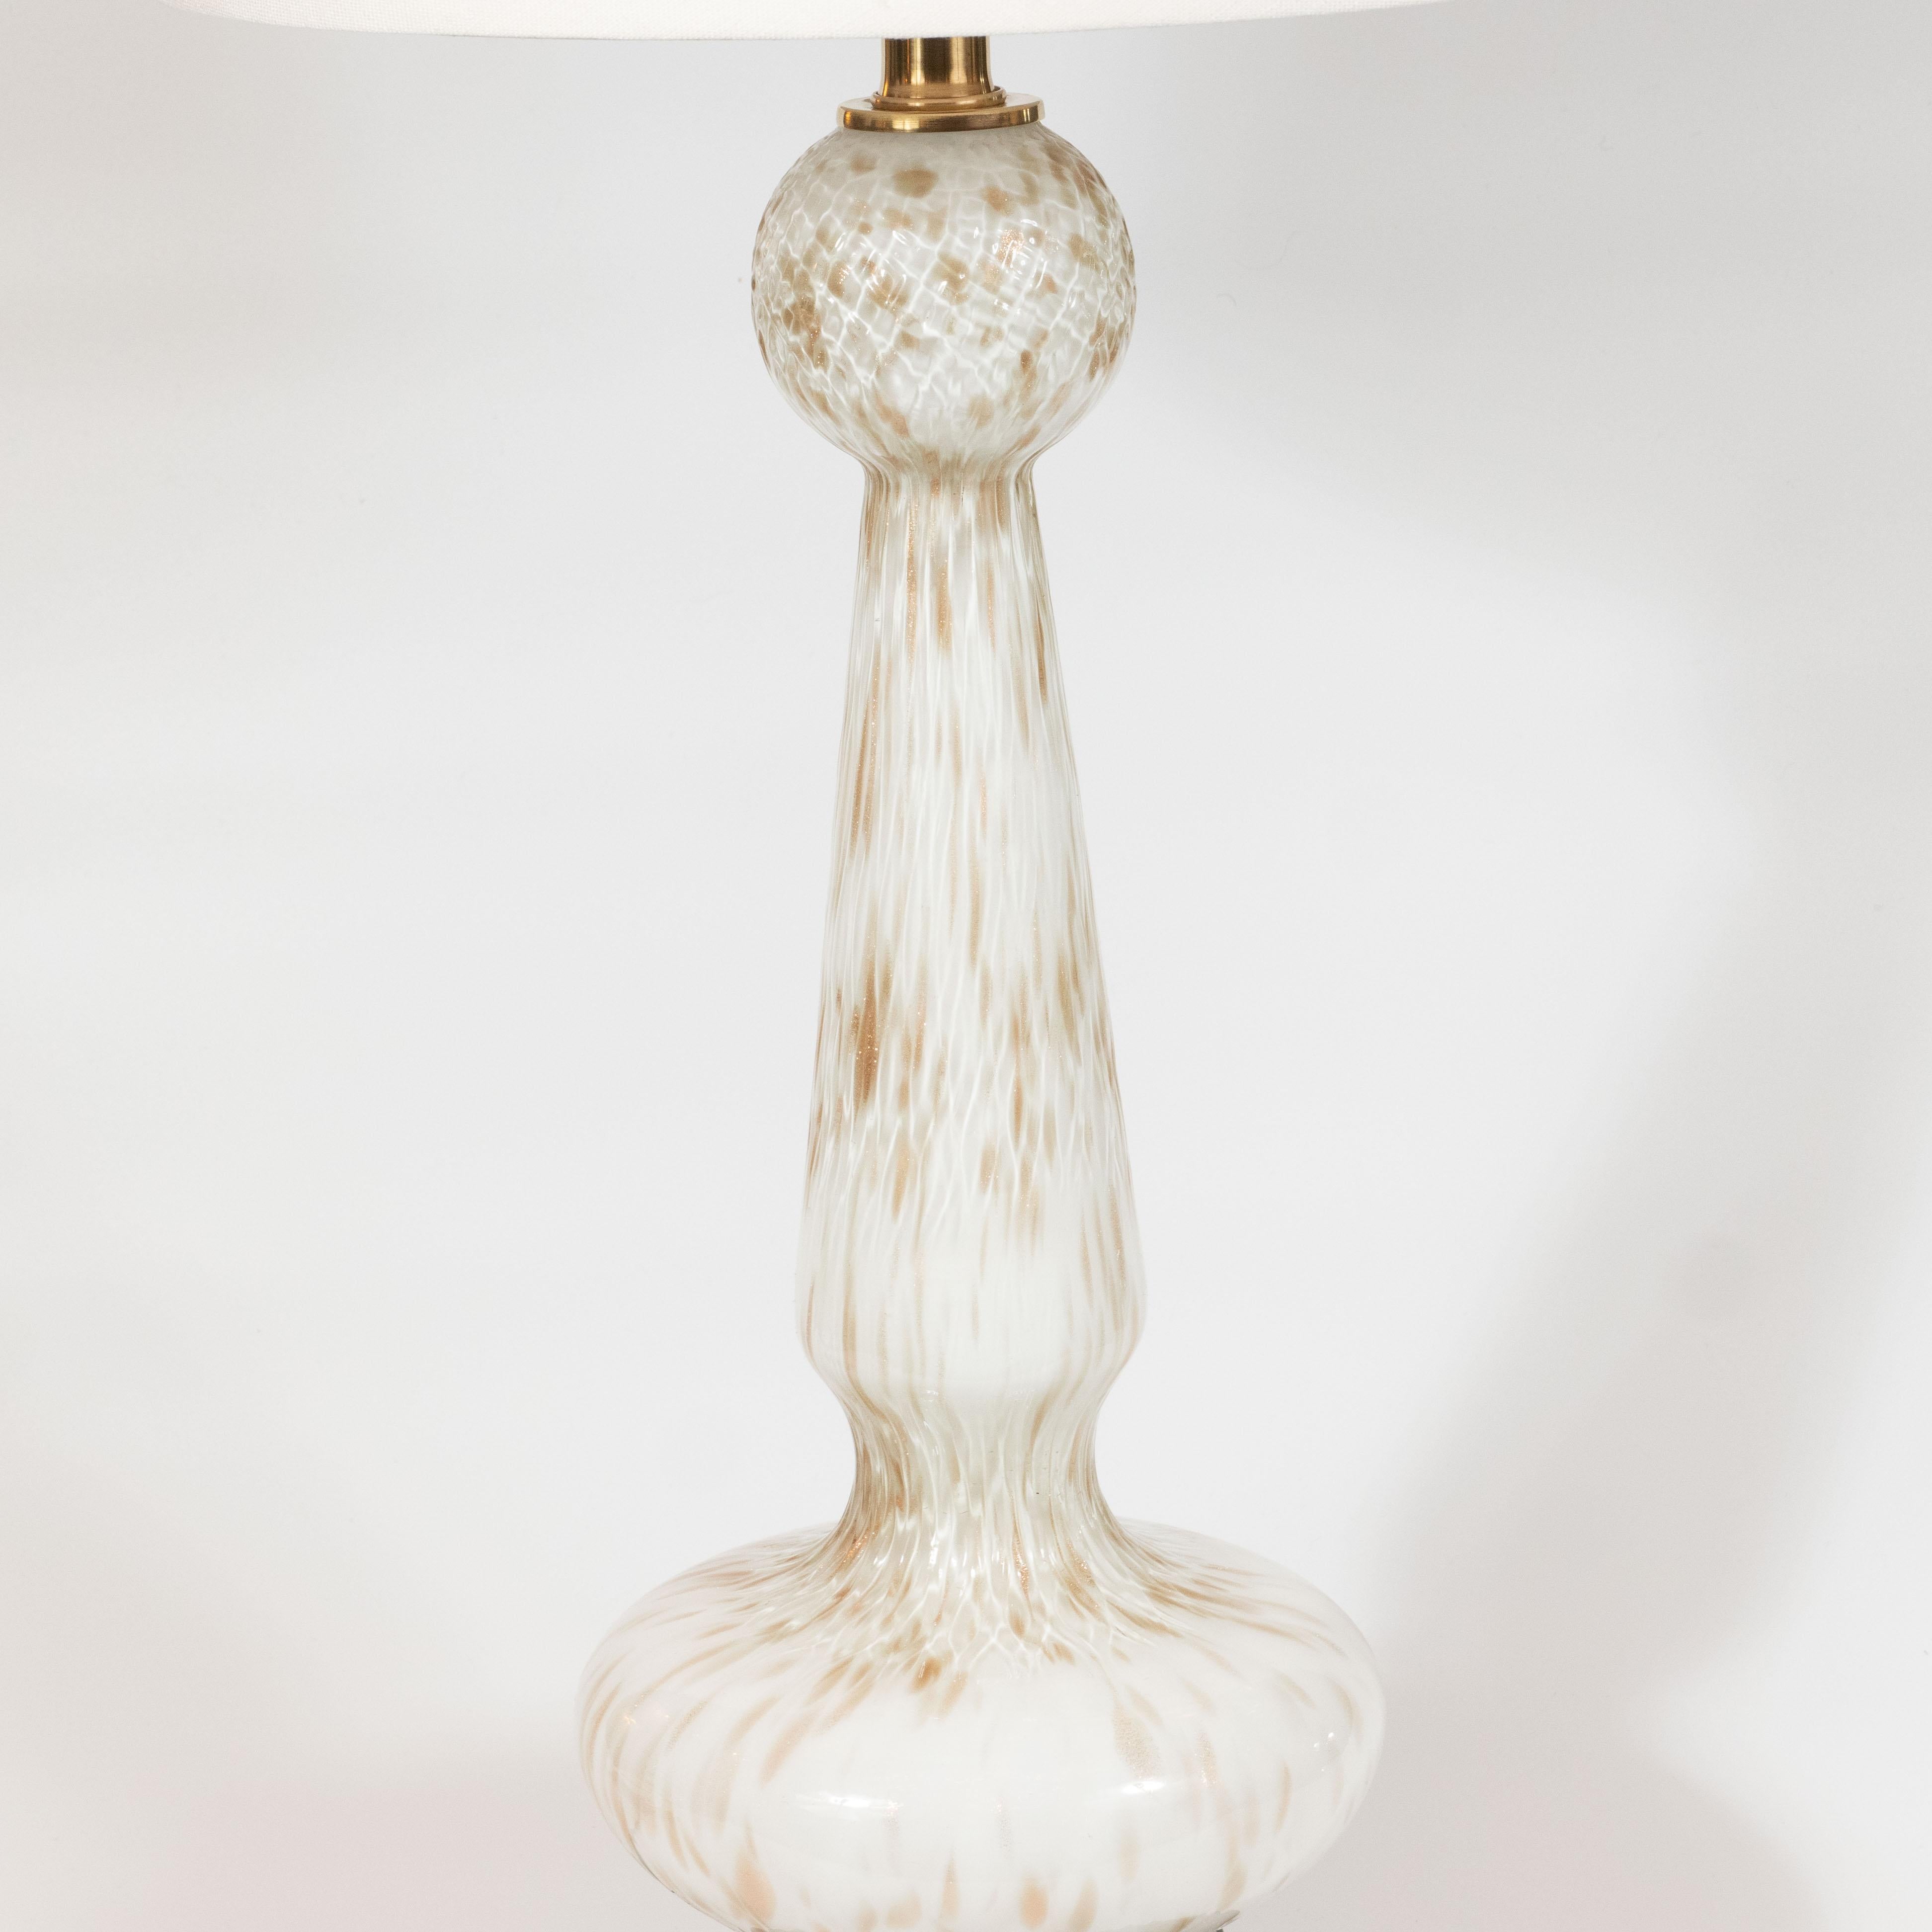 italien Paire de lampes de table Murano blanches soufflées à la main et ornées de mouchetures en or 24 carats, datant du milieu du siècle dernier